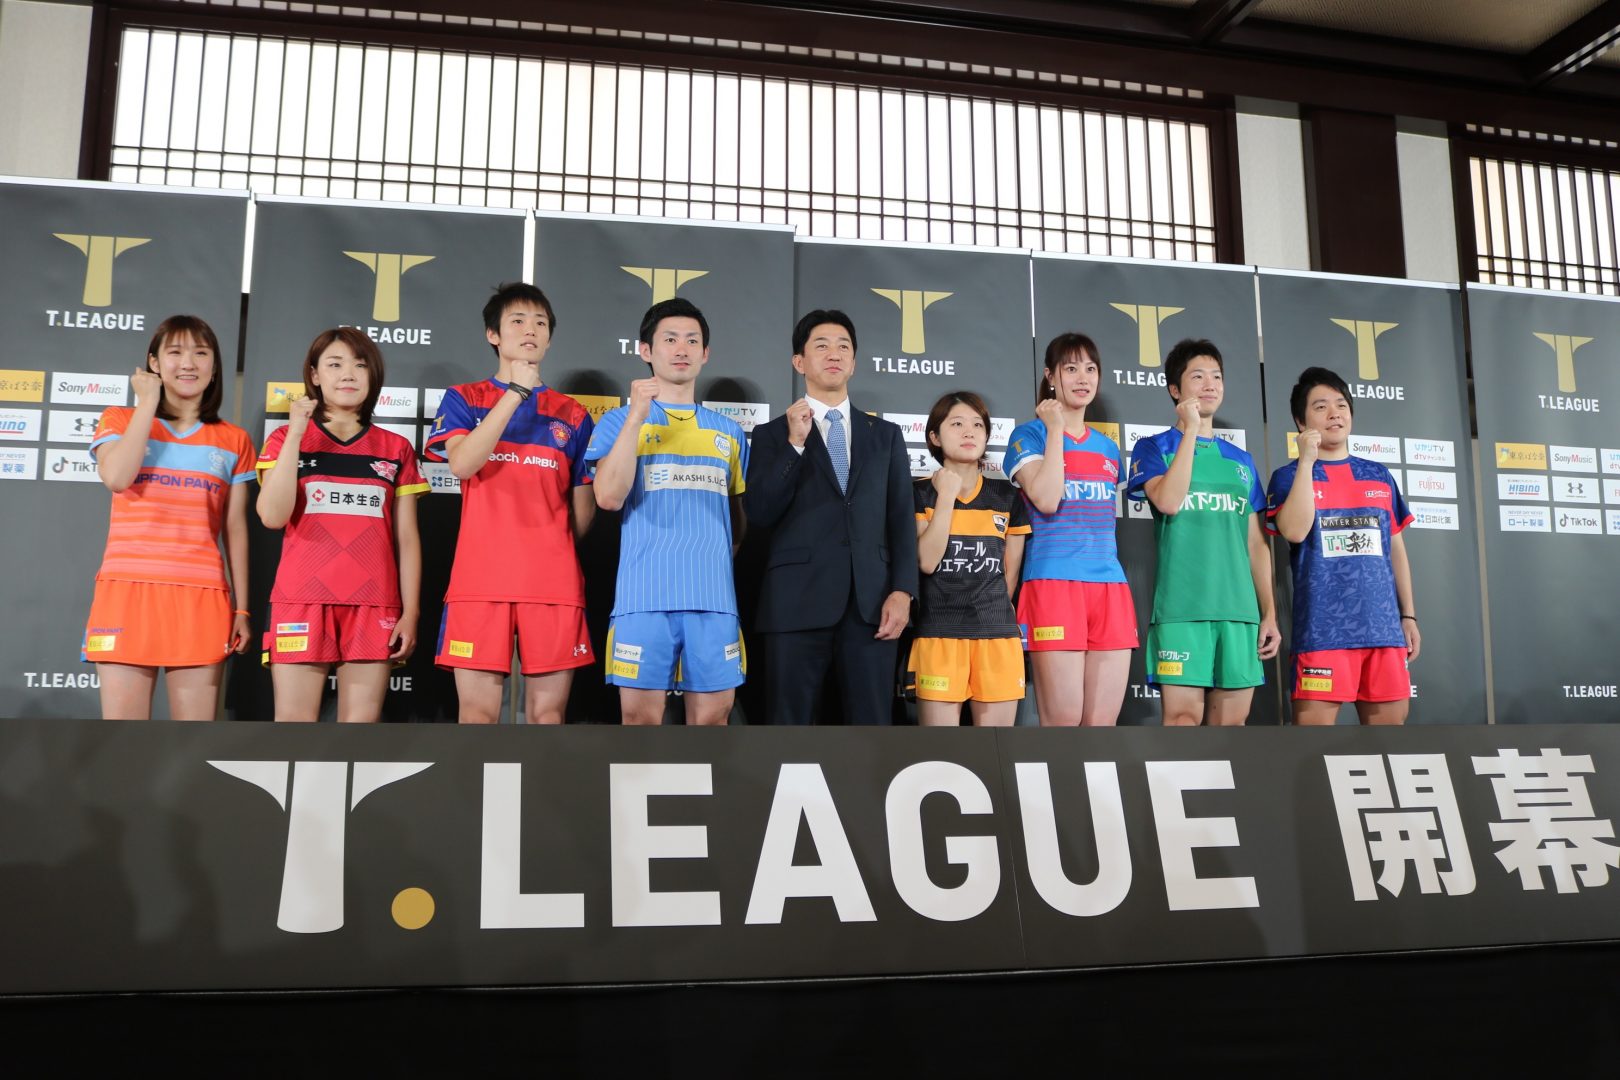 【卓球】Tリーグ・ファイナルが3月17日、両国国技館にて開催決定